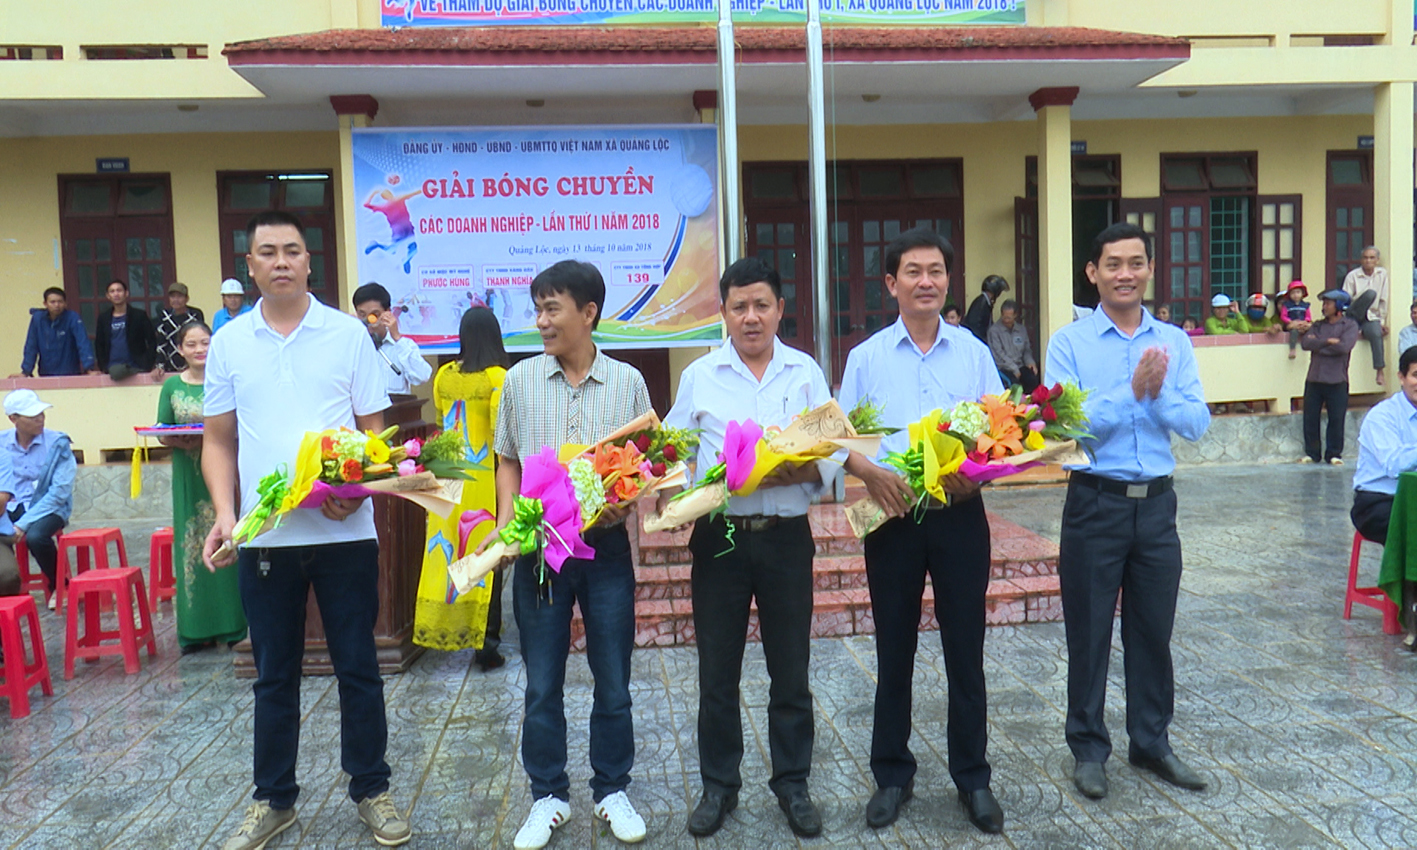 Xã Quảng Lộc tổ chức giải bóng chuyền các doanh nghiệp chào mừng ngày Doanh nhân Việt Nam